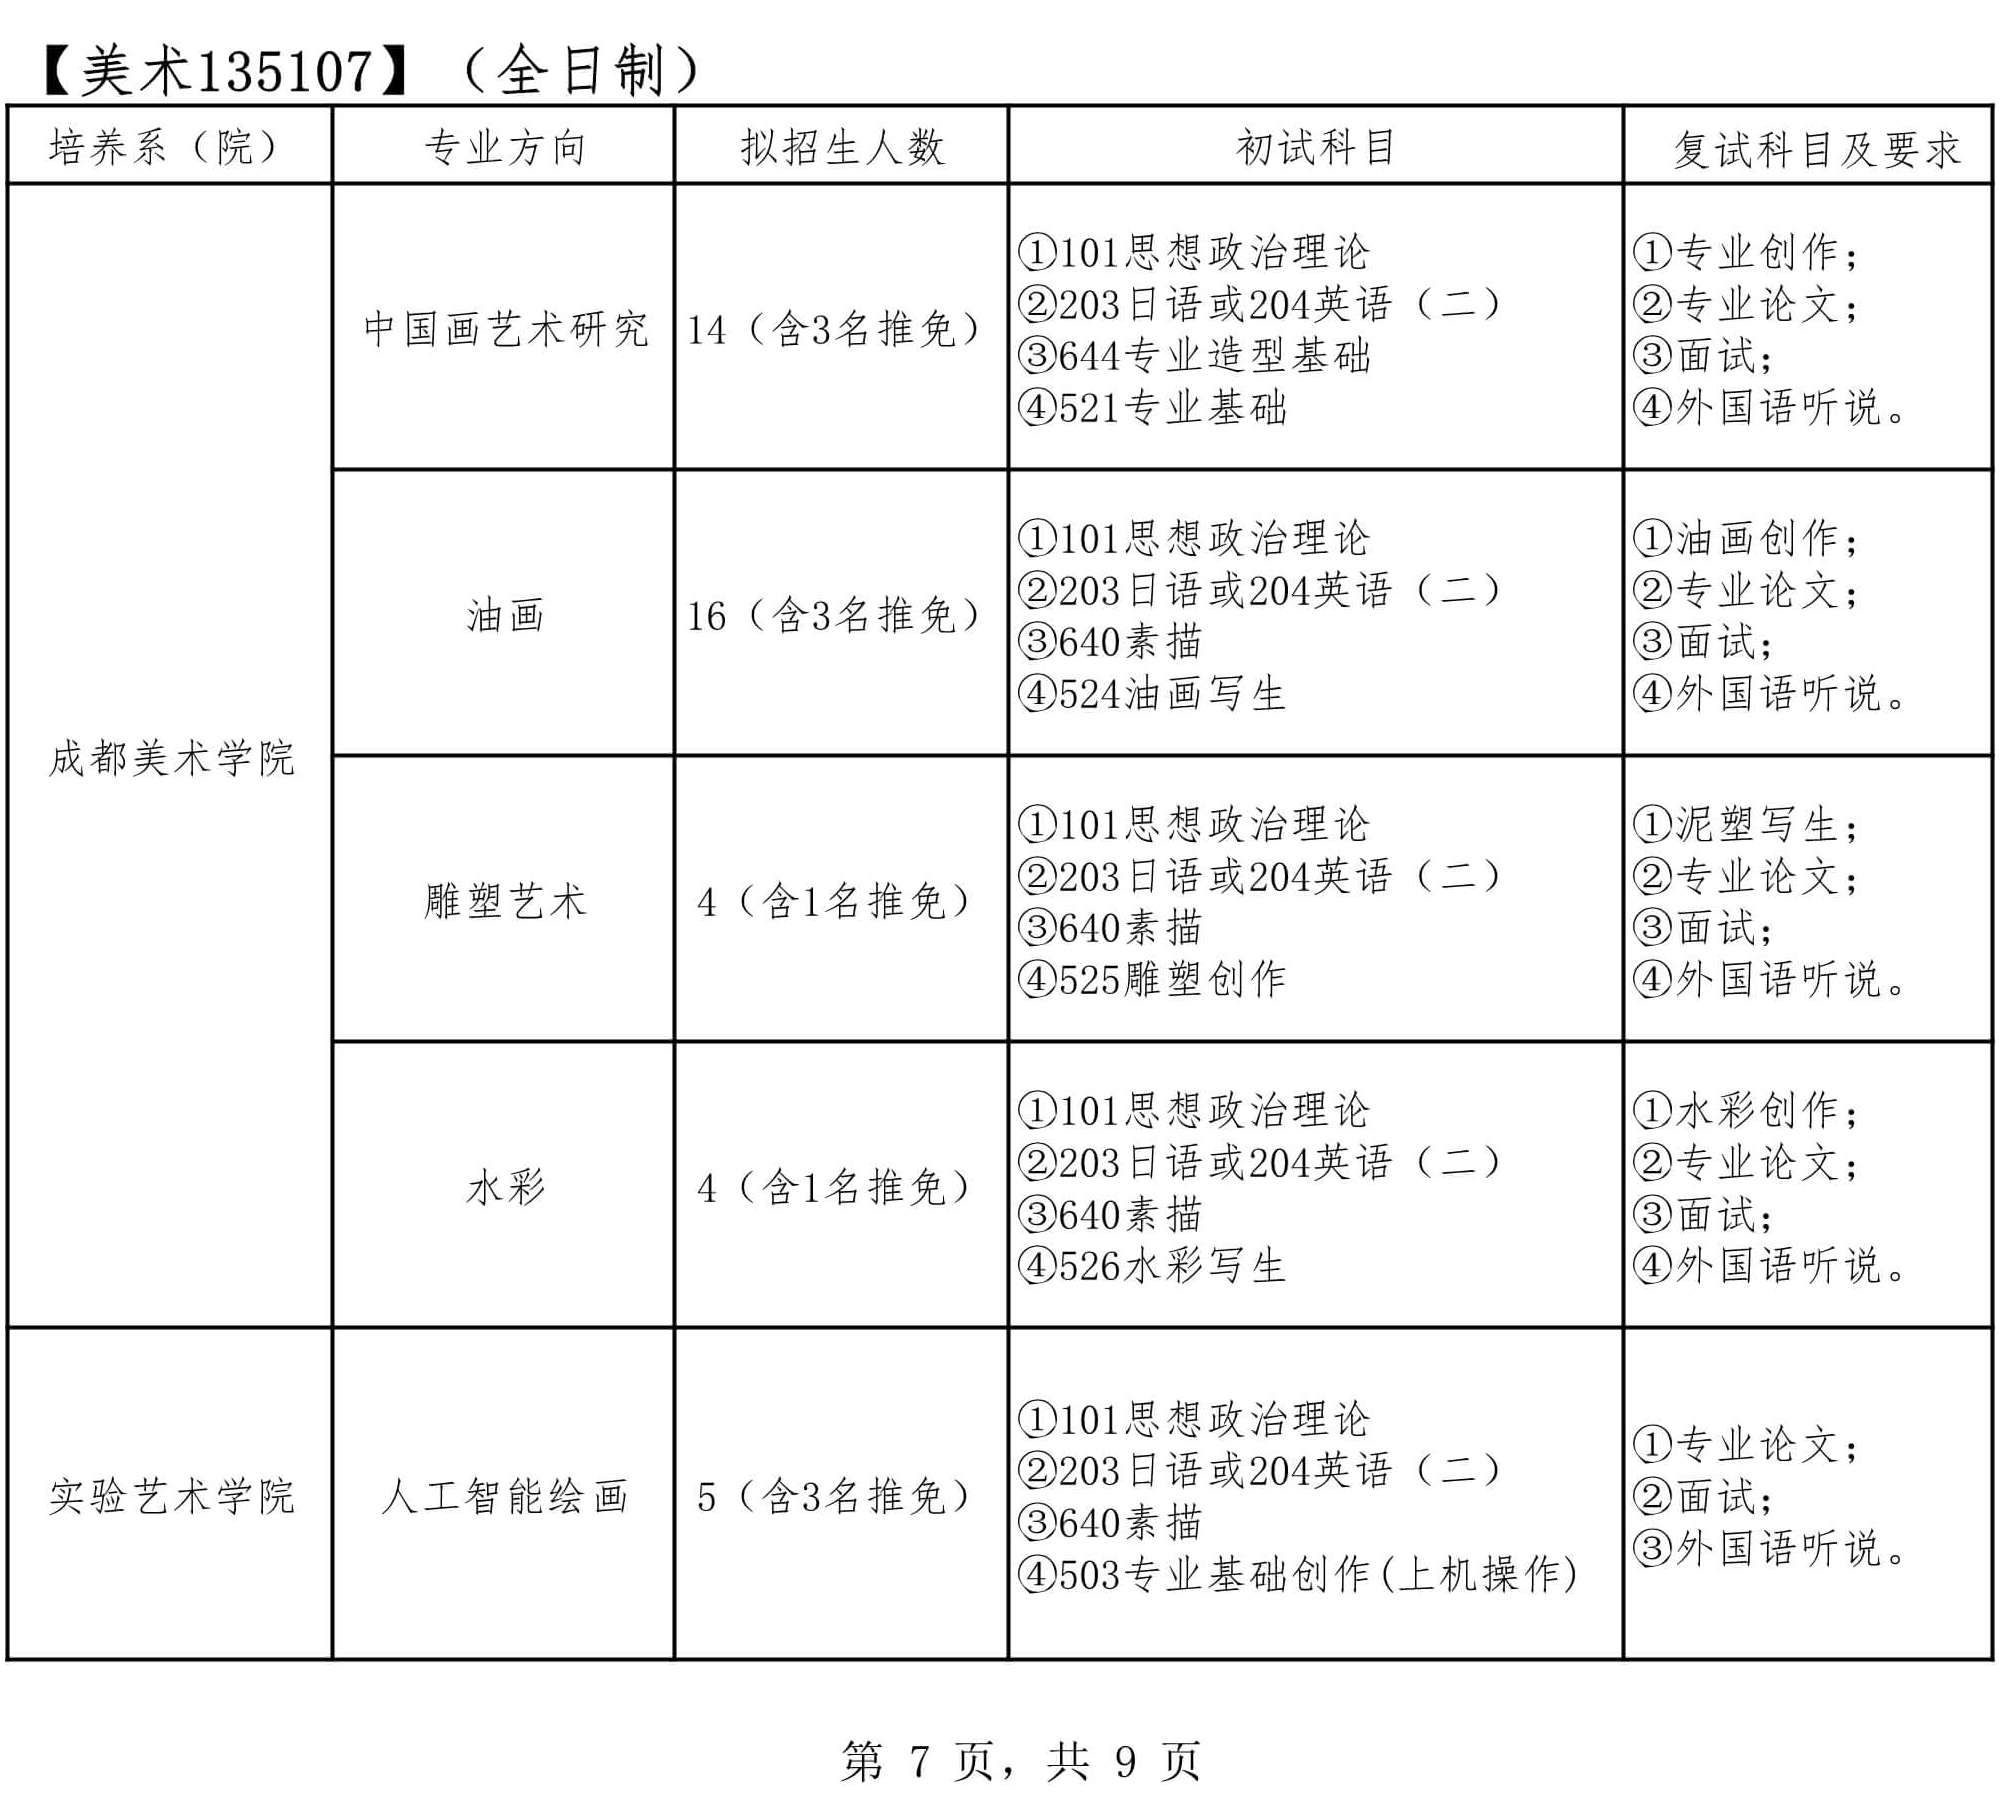 2022年四川音樂學院碩士研究生招生章程